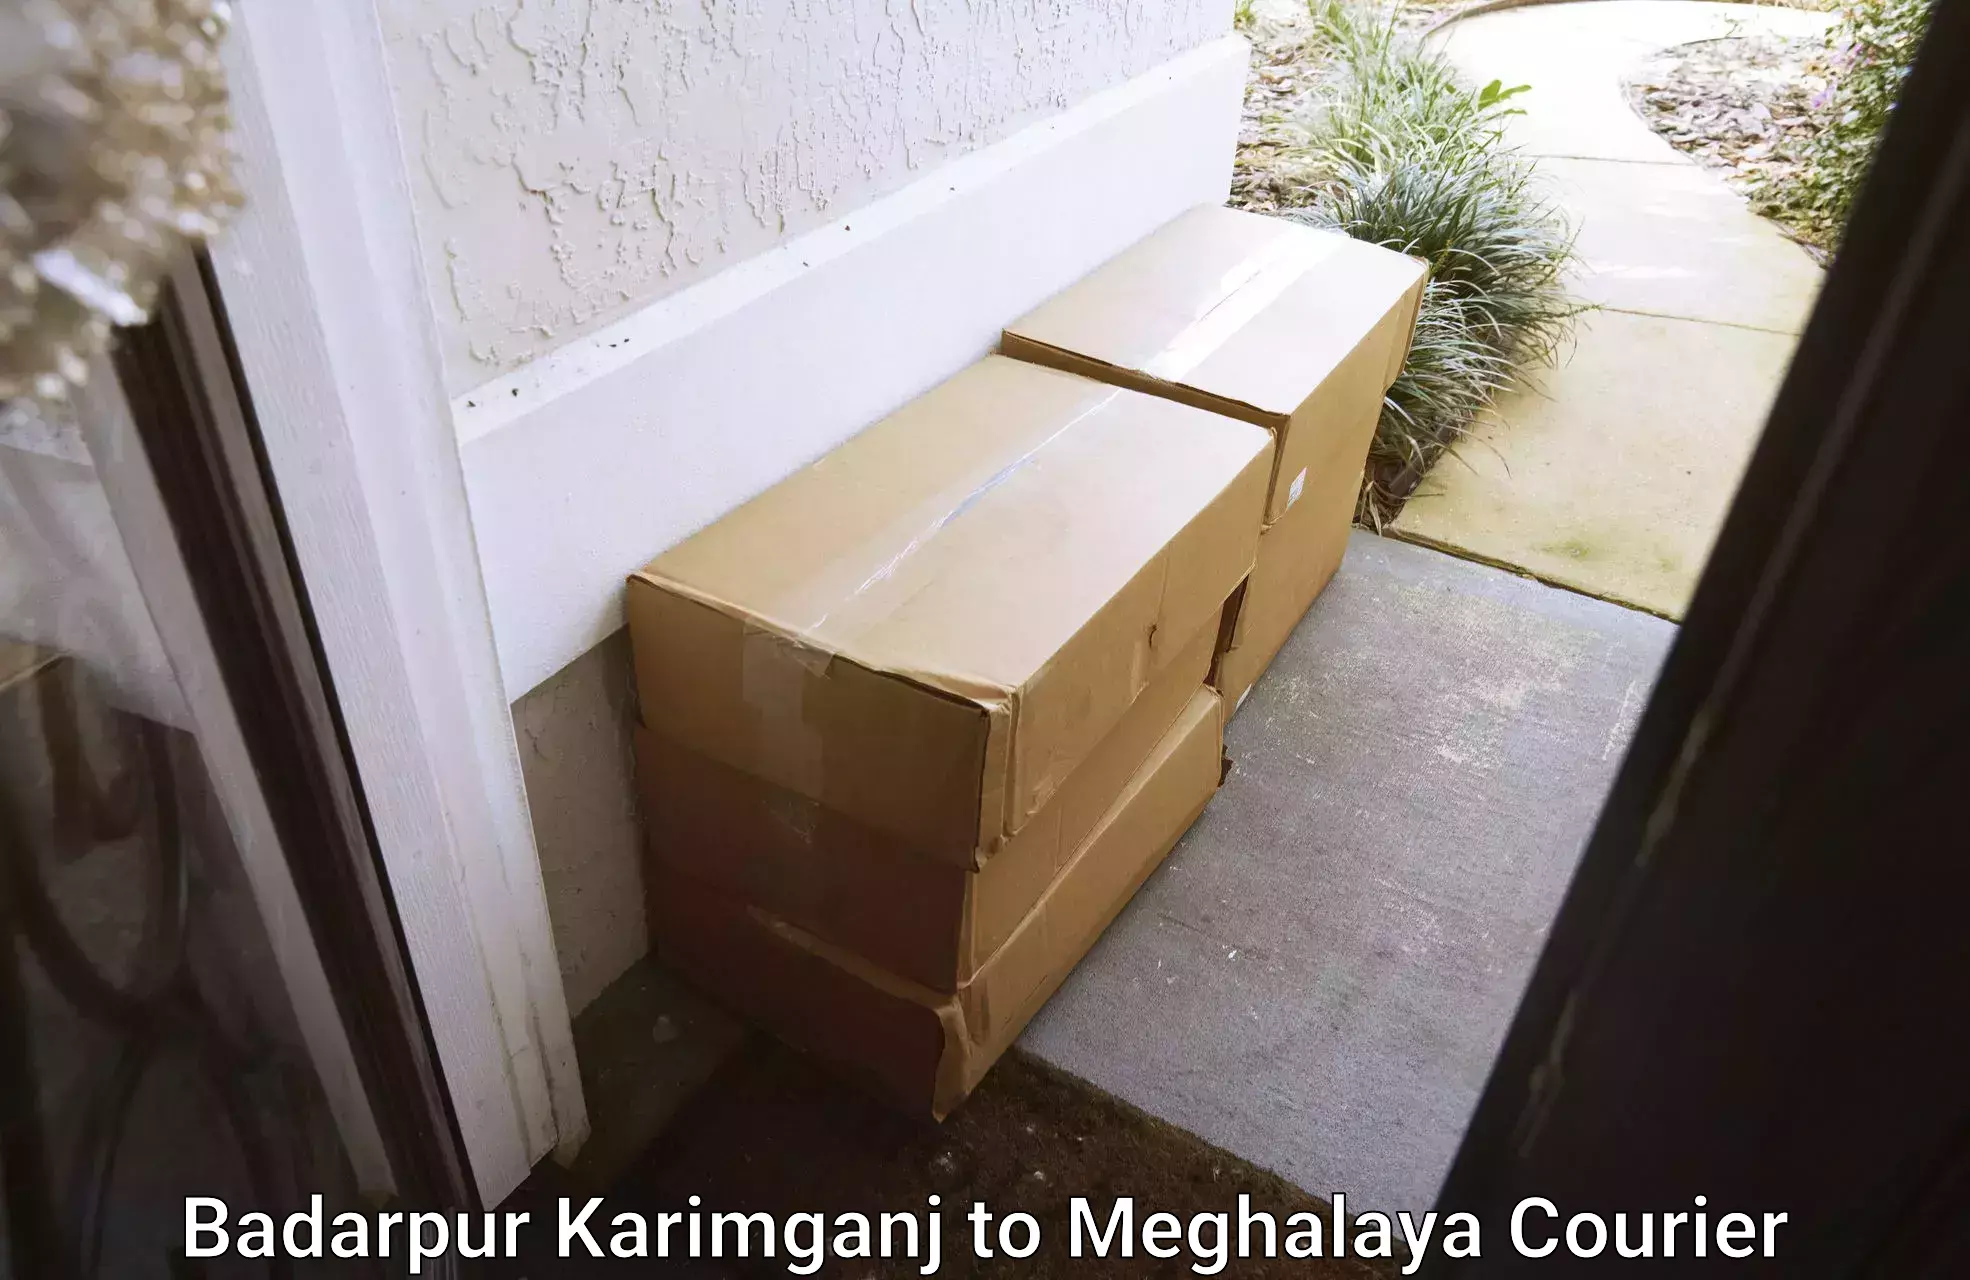 Door-to-door shipment Badarpur Karimganj to Meghalaya